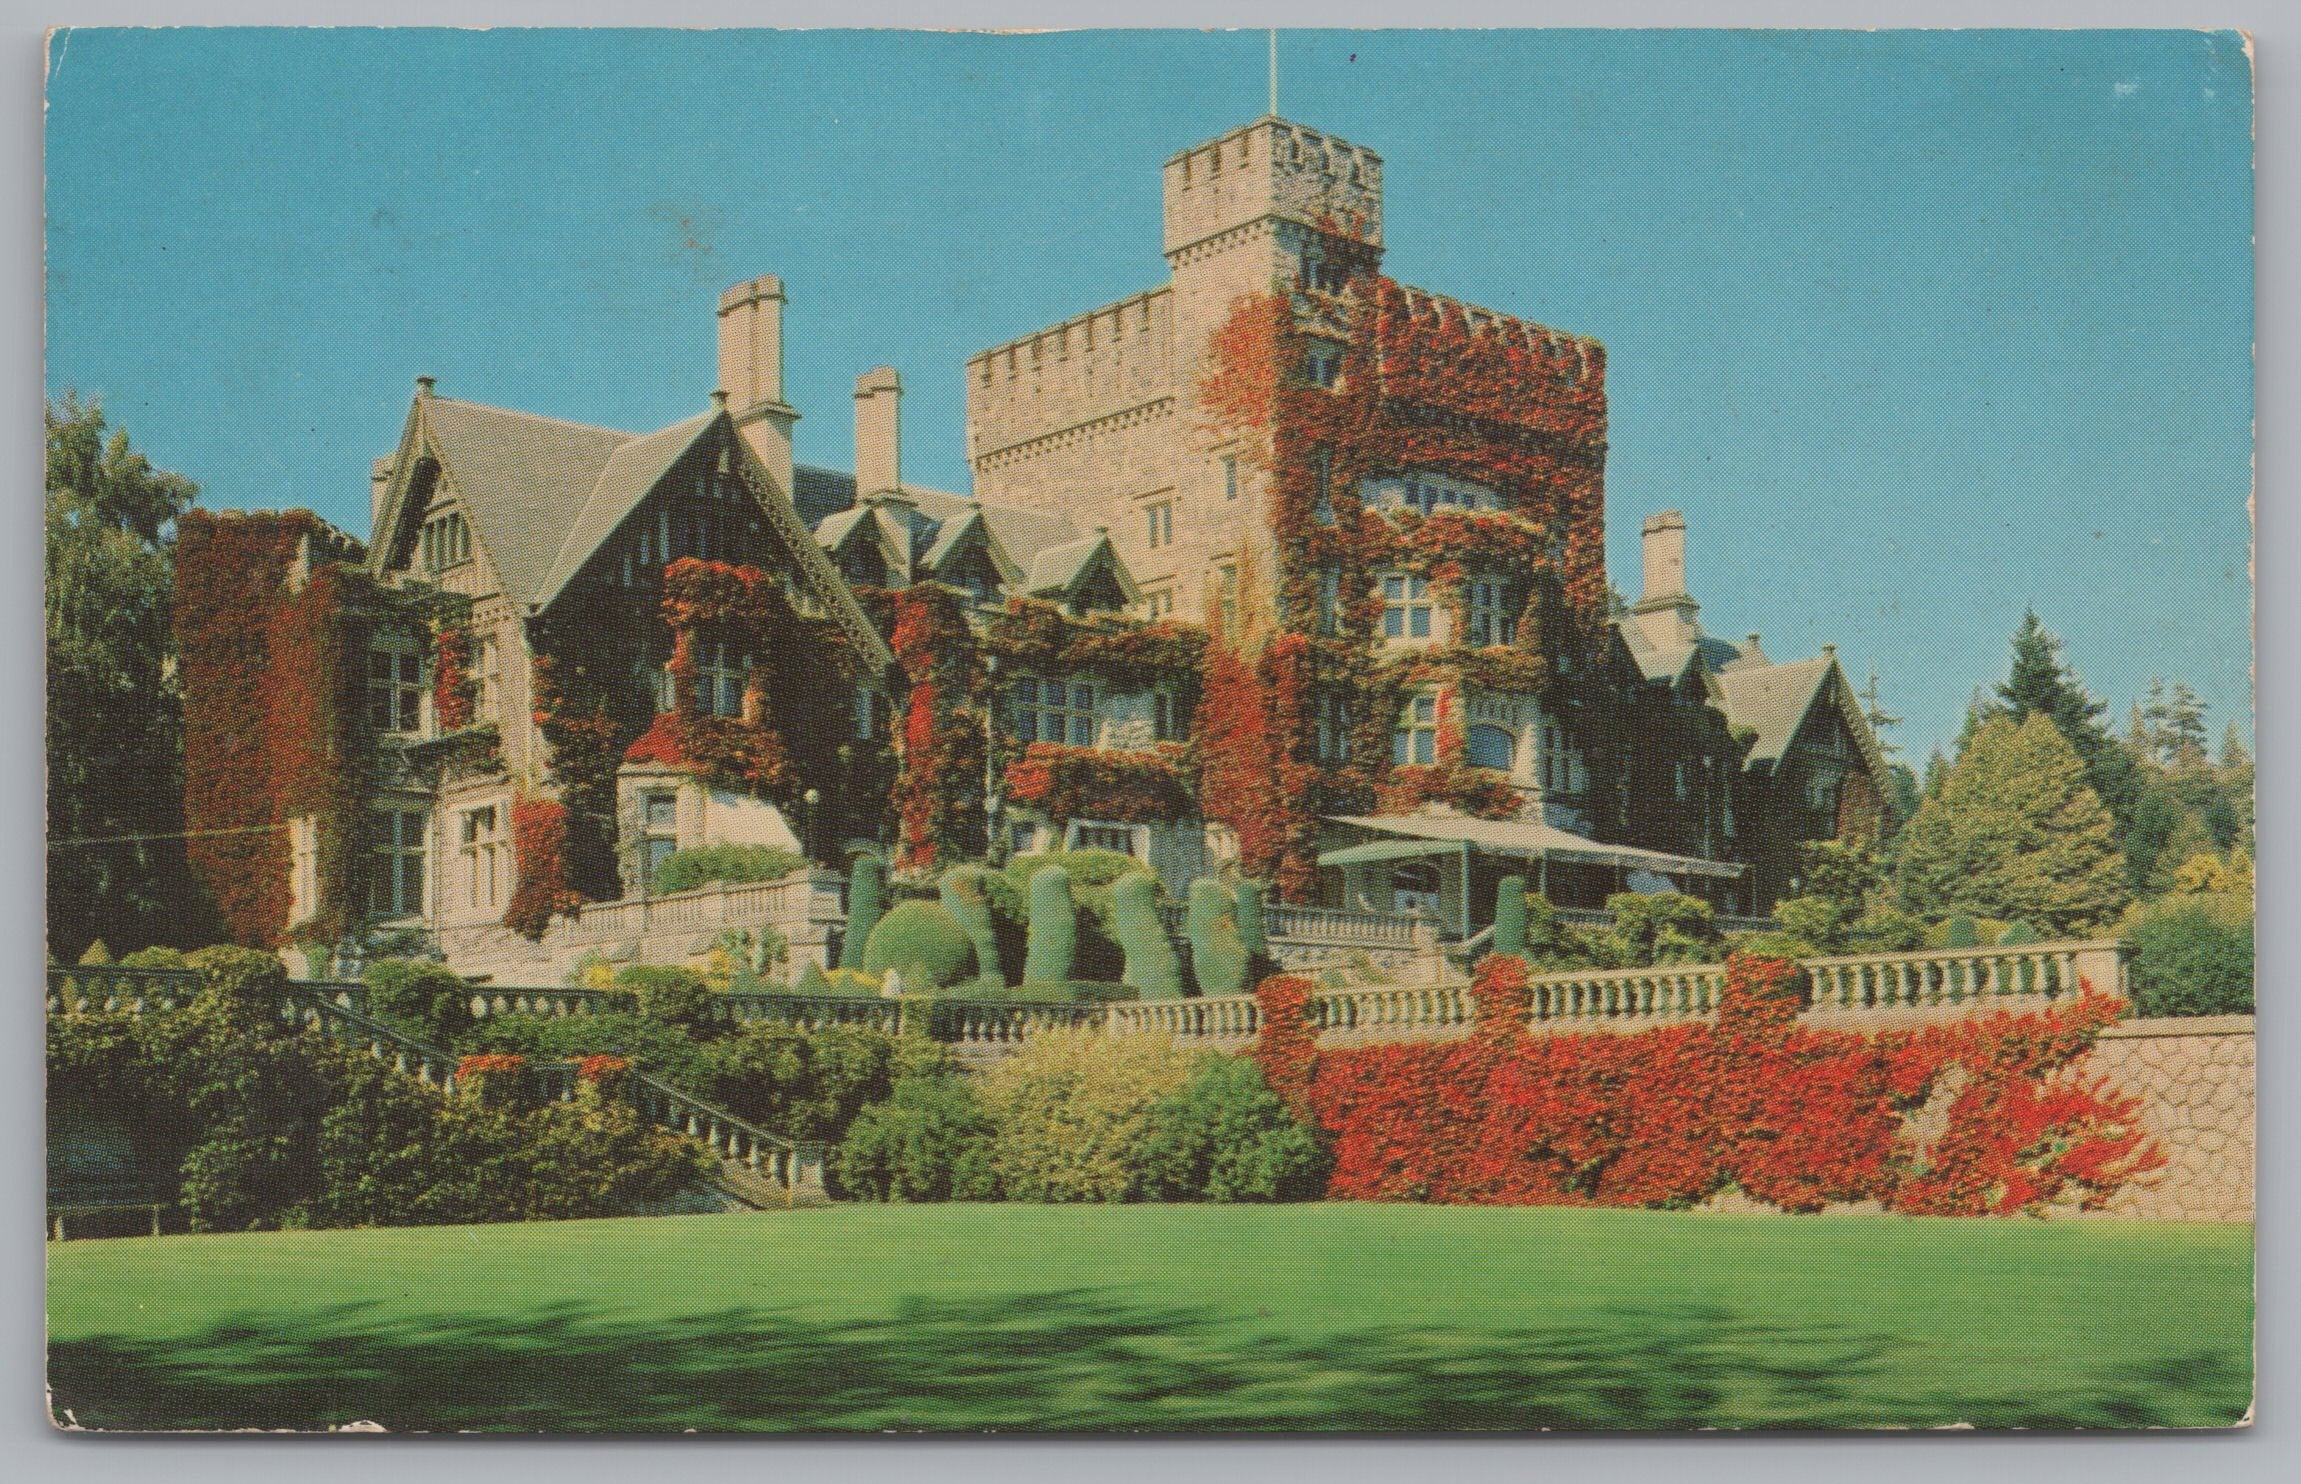 Victoria B.C. Canada, Hatley Castle, Royal Canadian Naval, Vintage Post Card